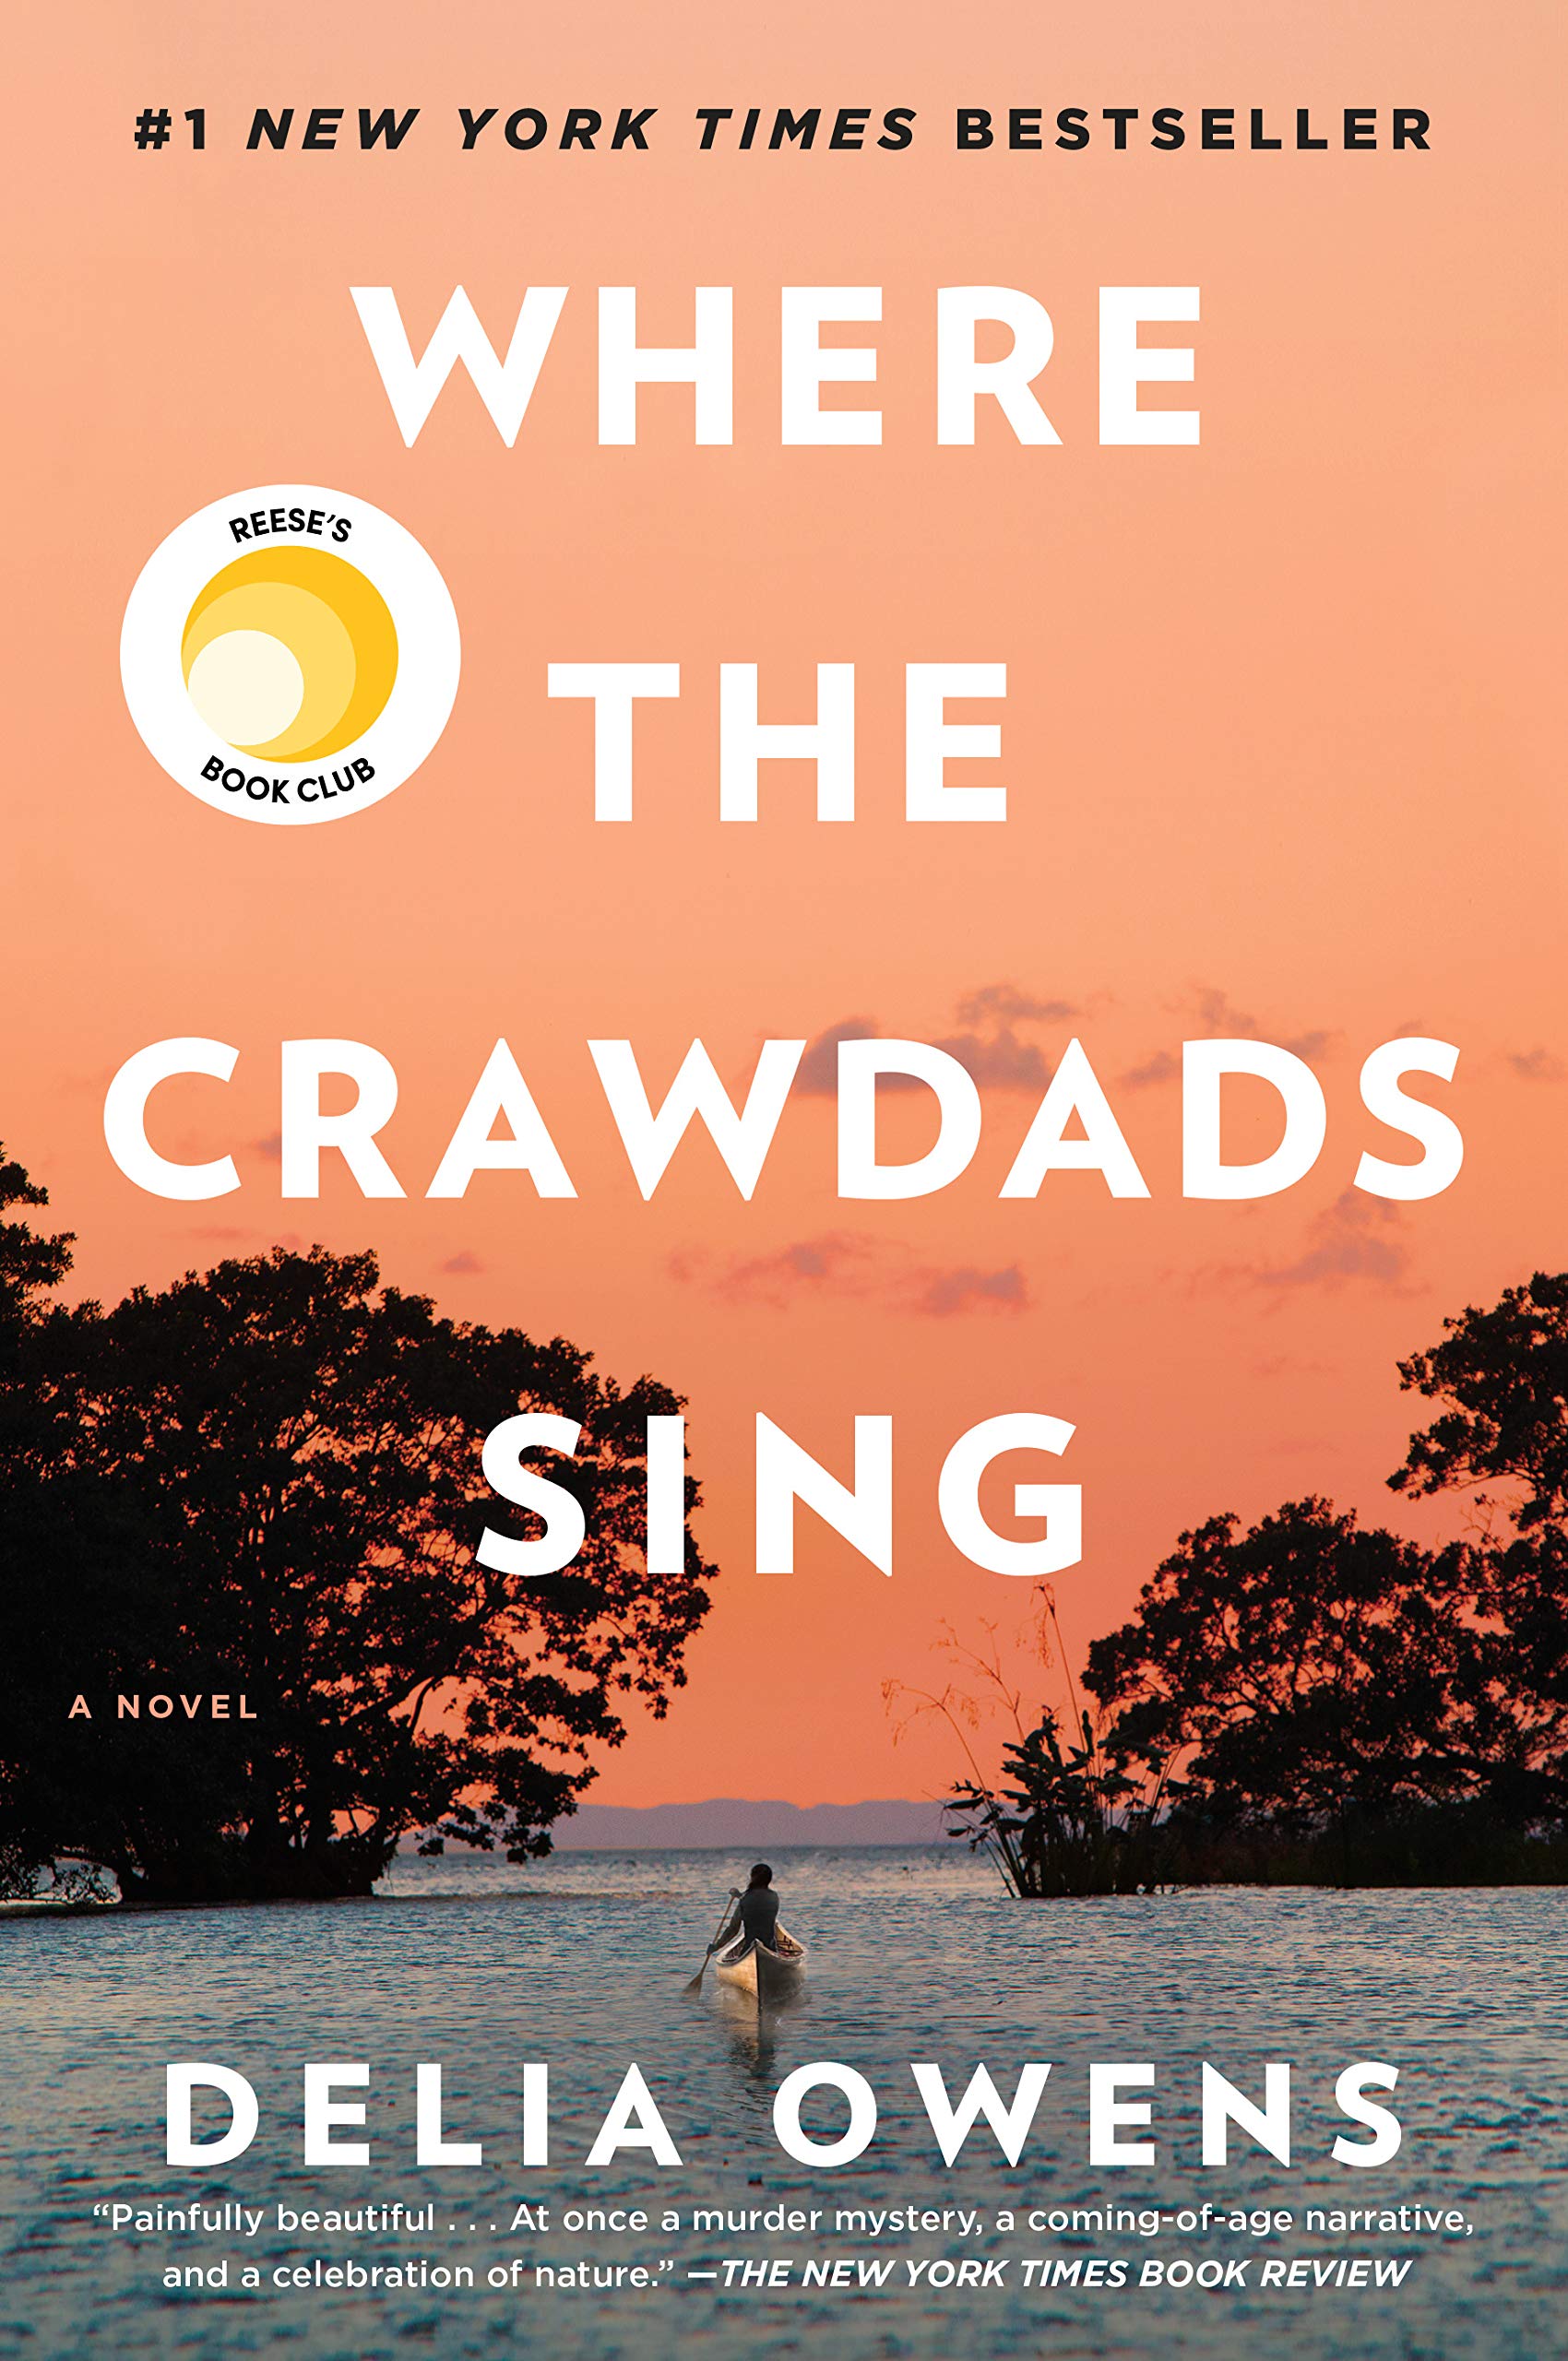 "Where the Crawdads sing“ – романтичен разказ за несломимата сила на човешкия дух